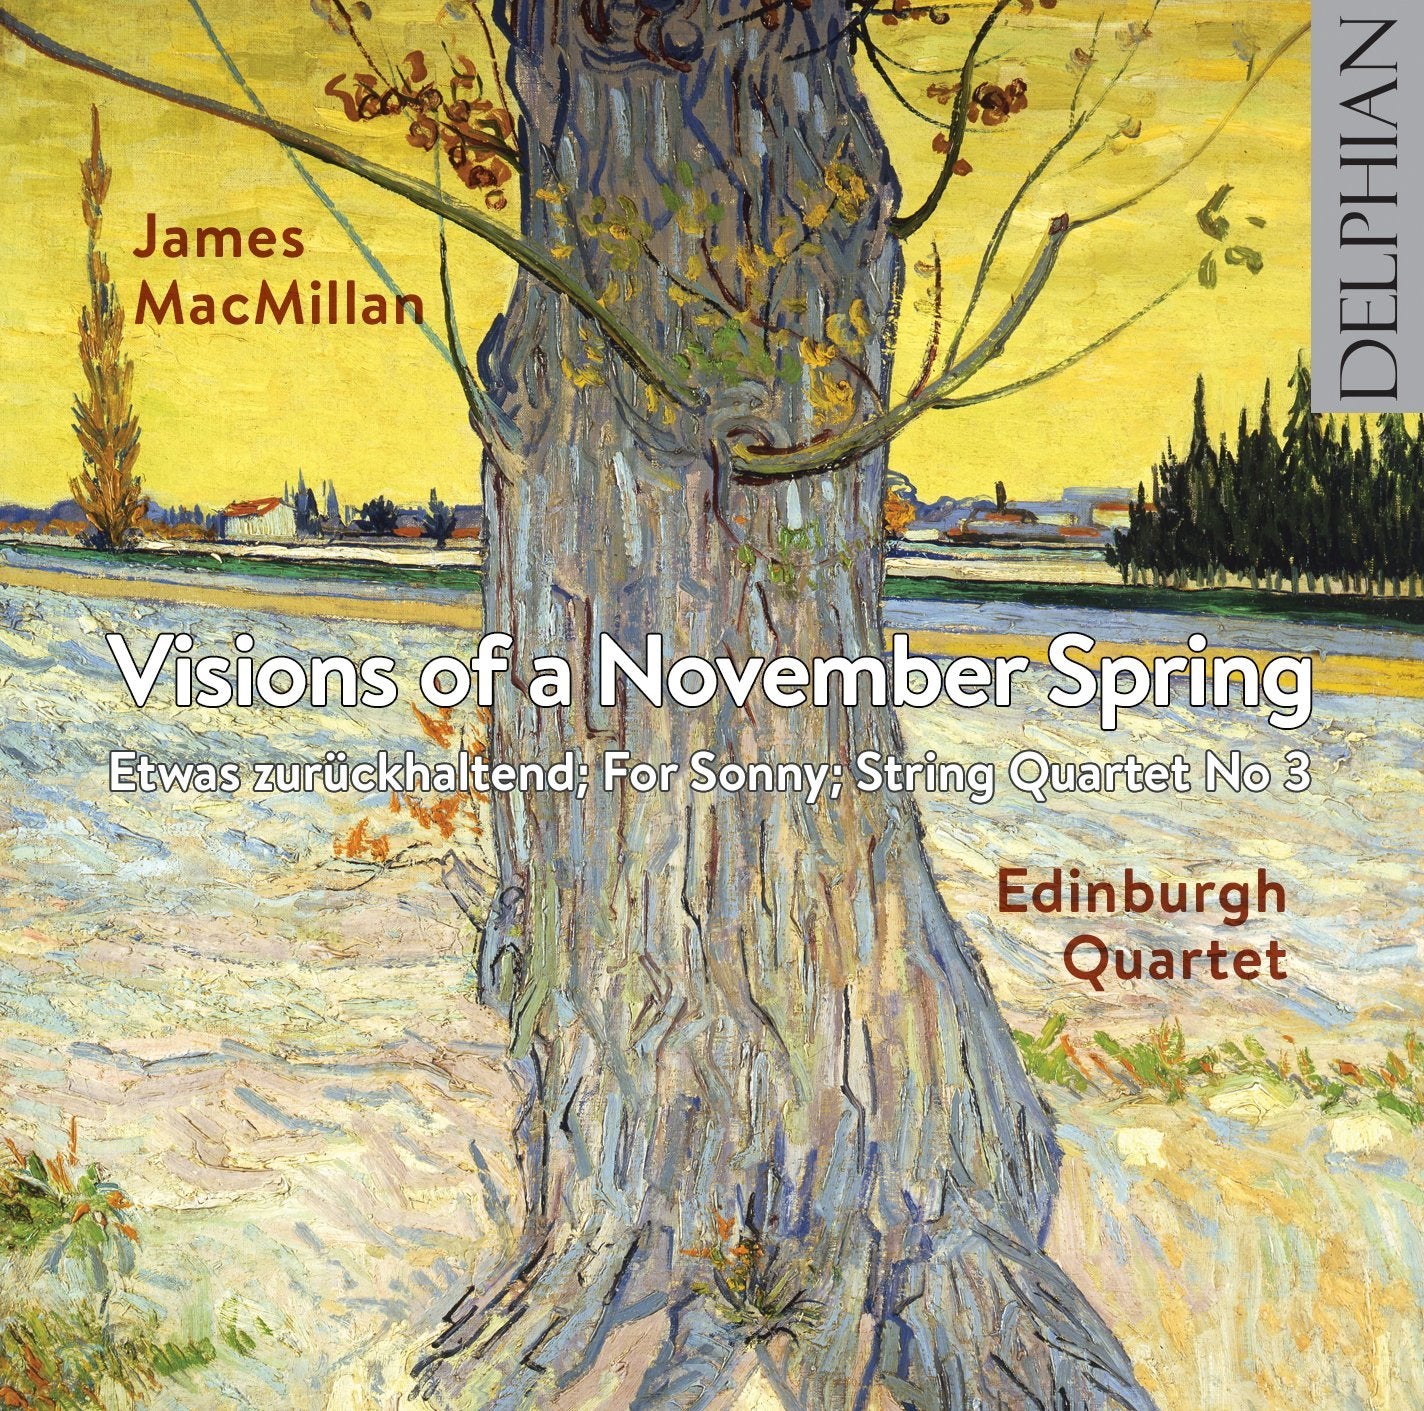 James MacMillan: Visions of a November Spring